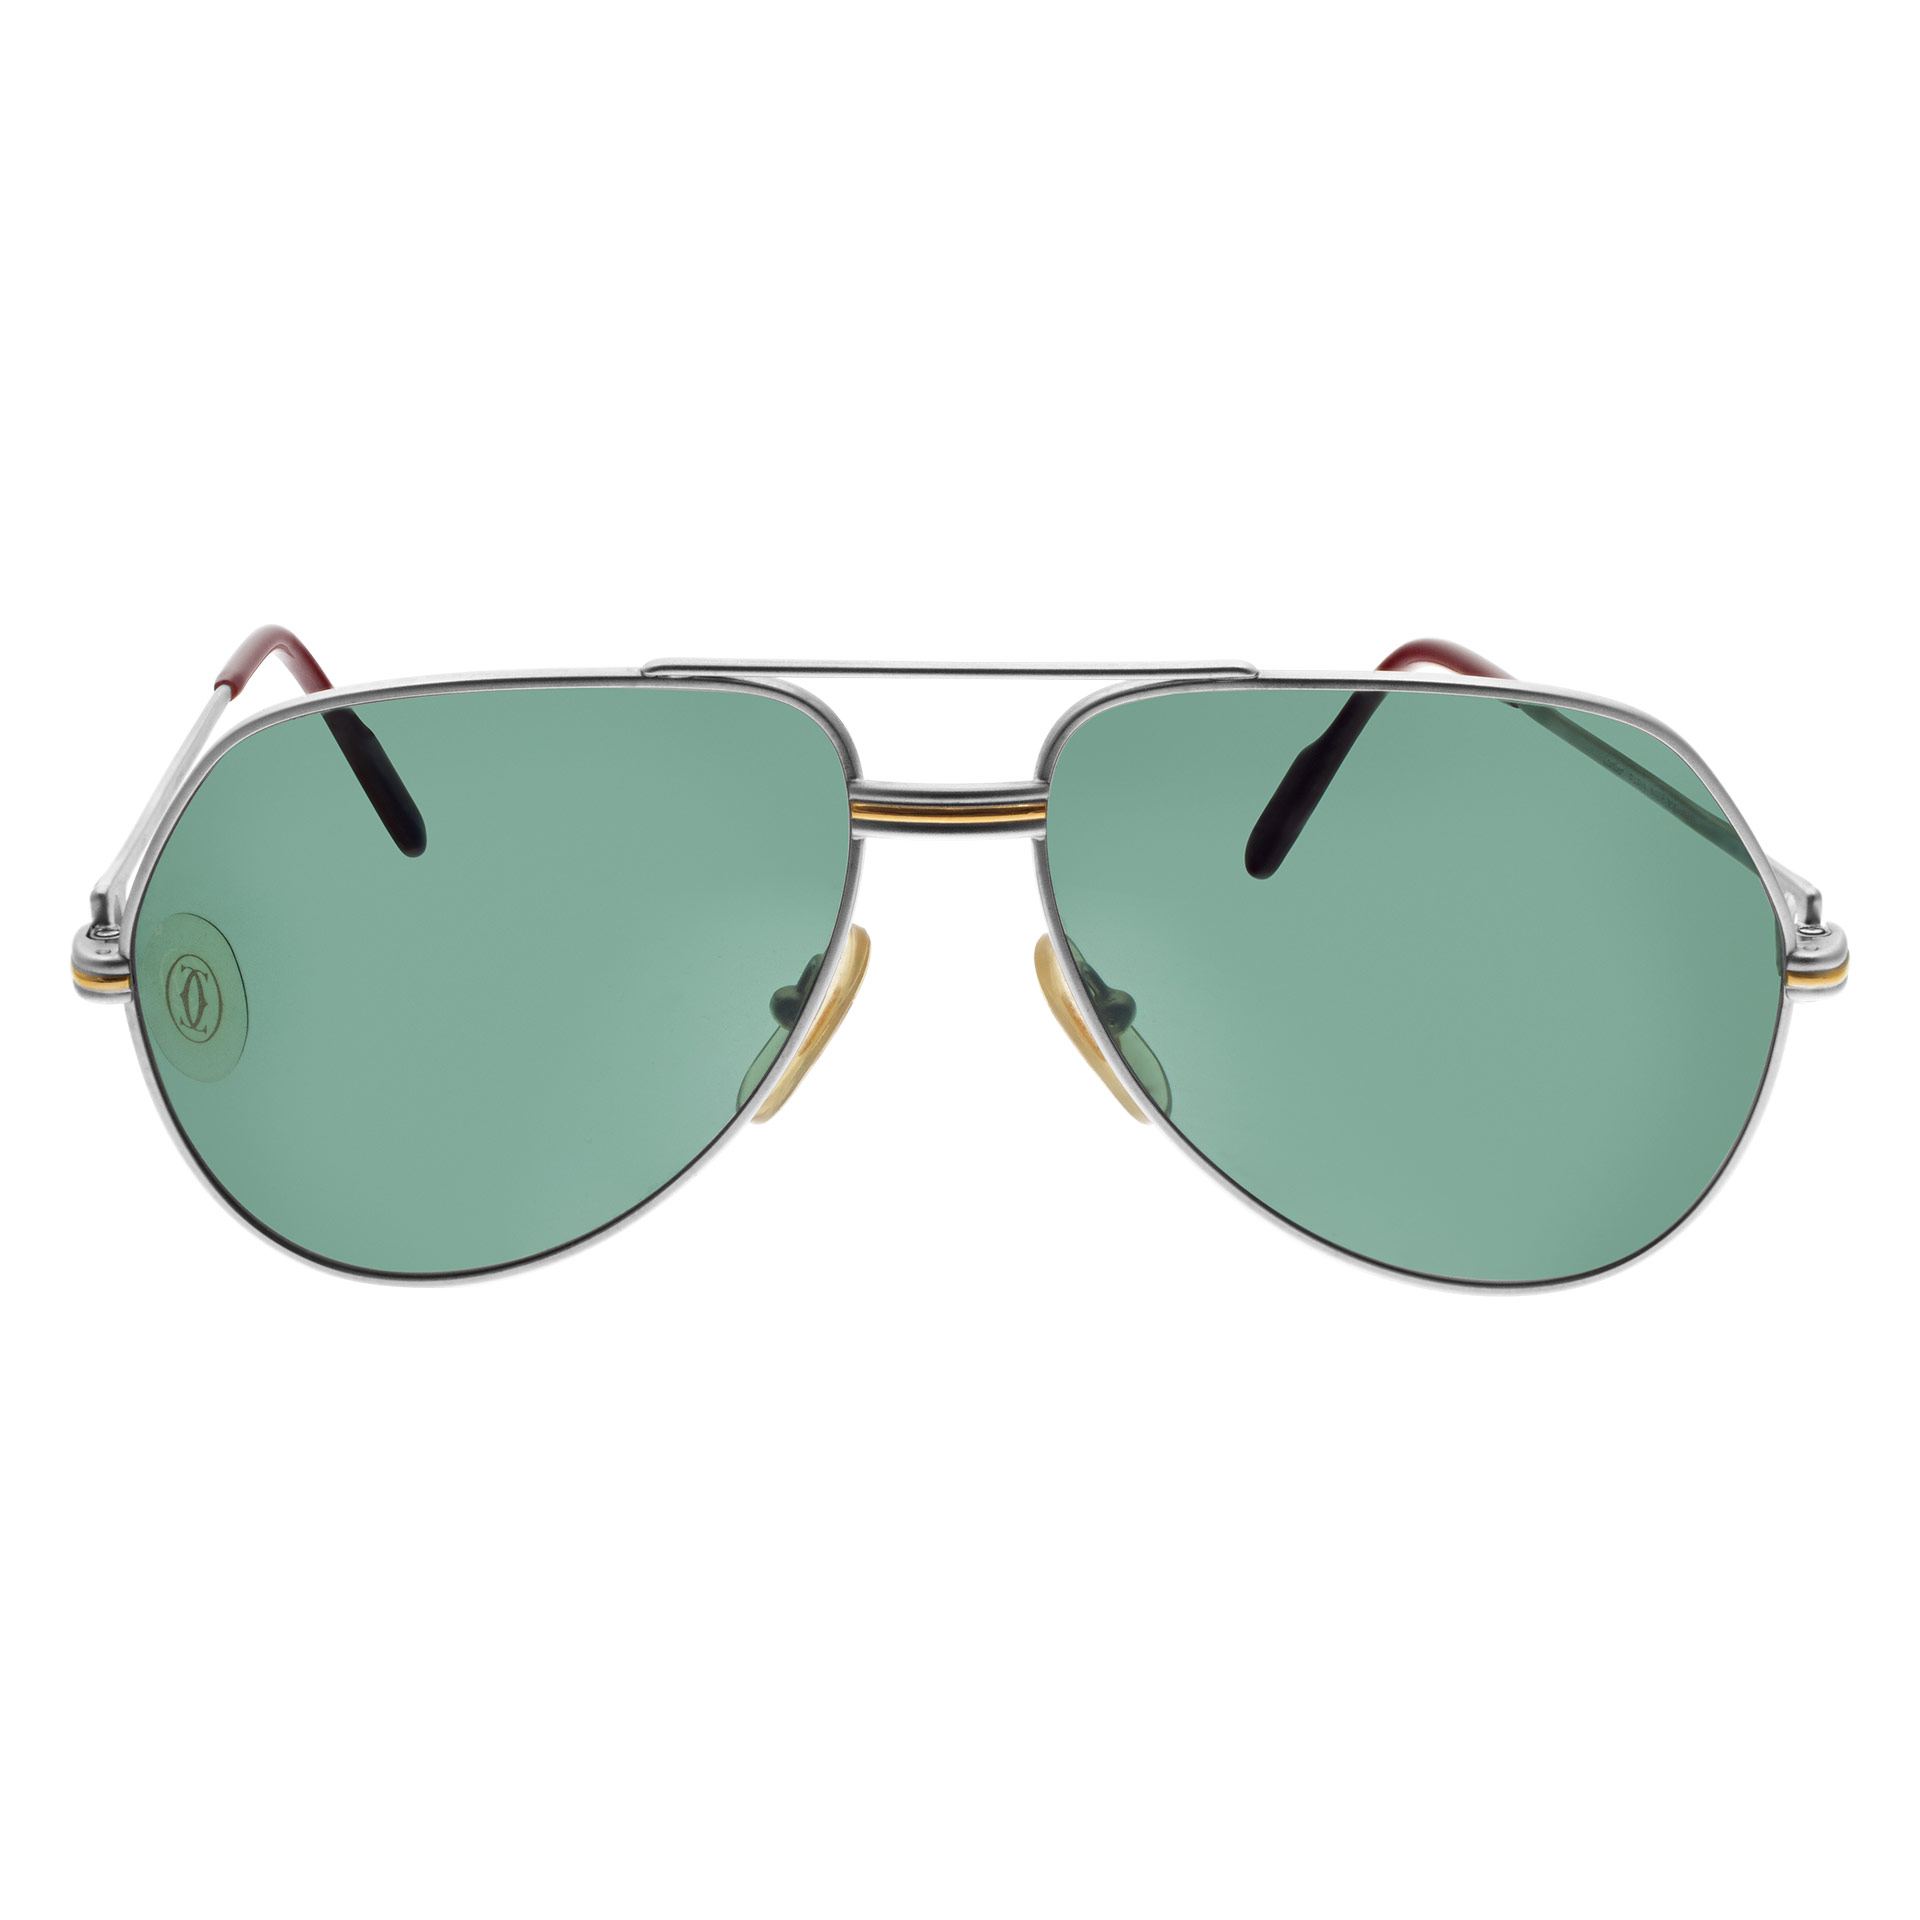 Cartier Vendome Louis sunglasses